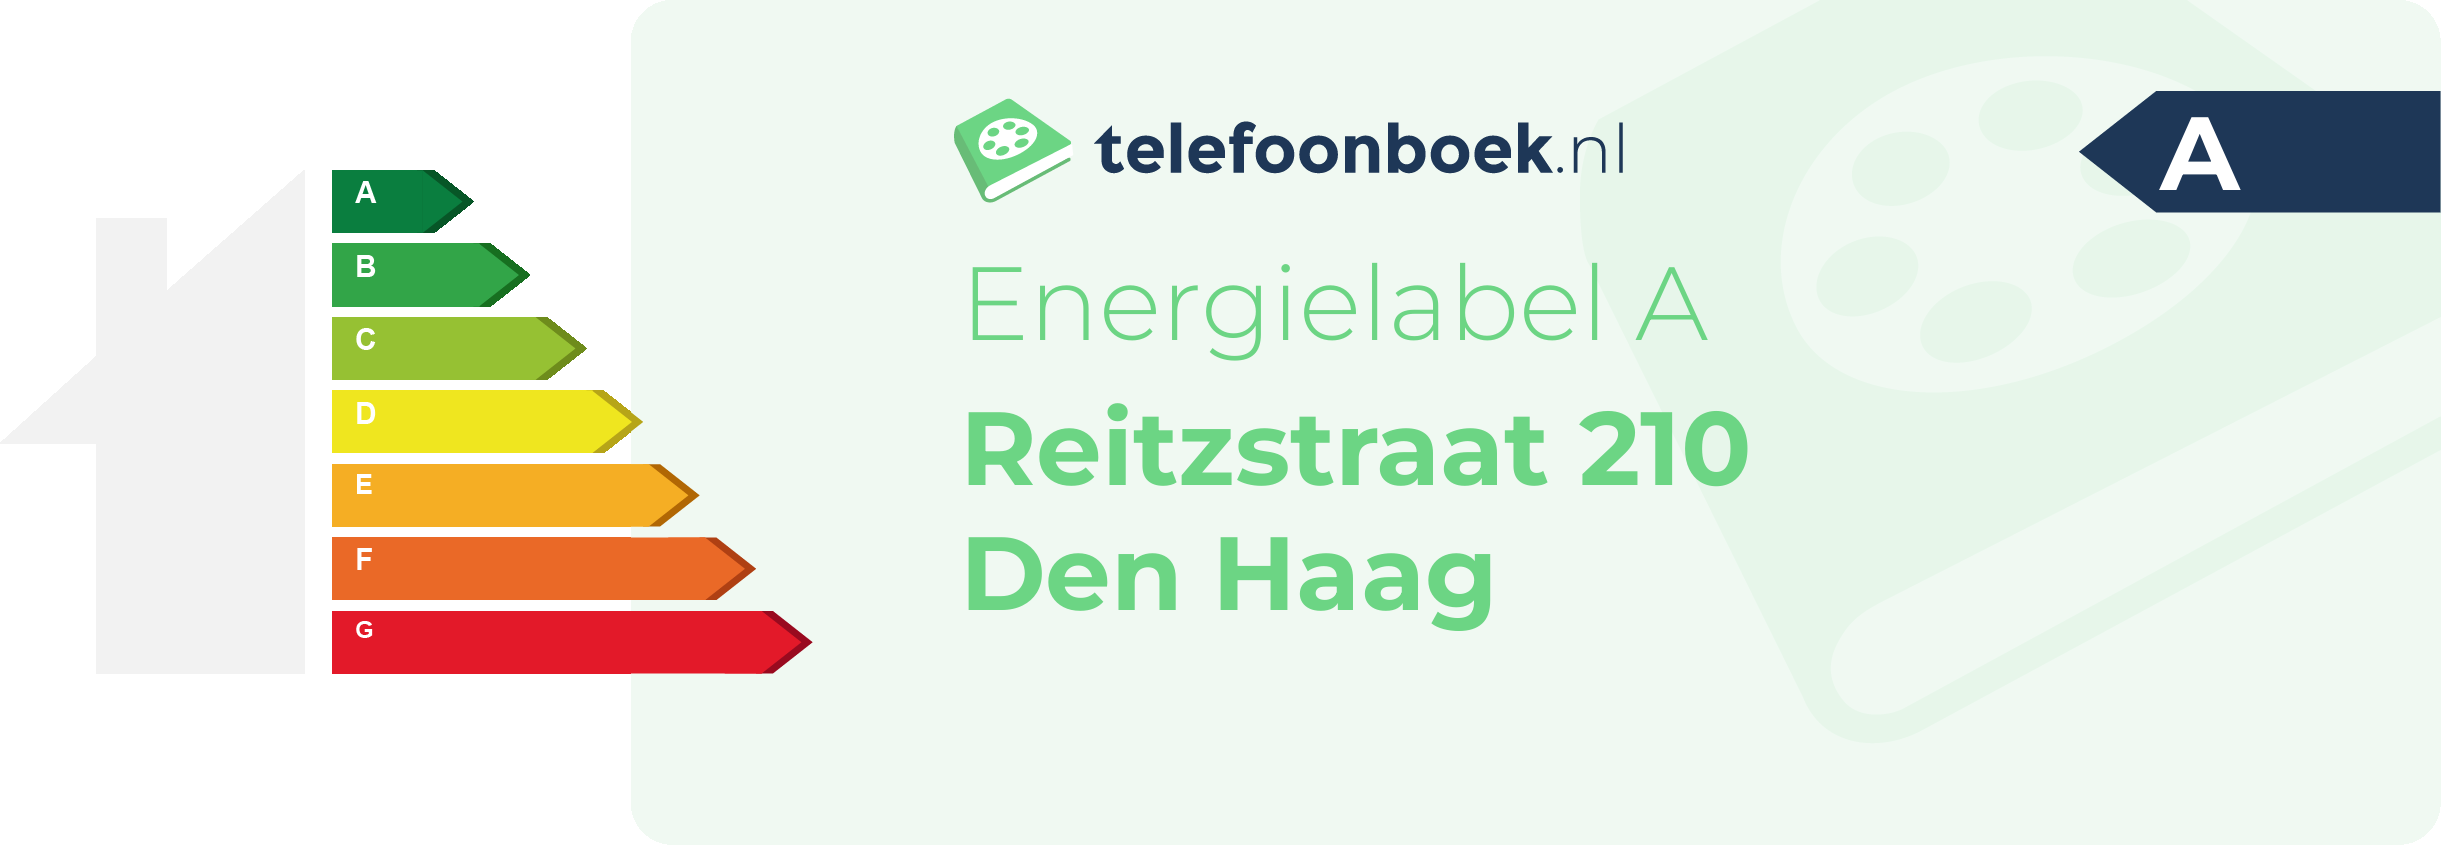 Energielabel Reitzstraat 210 Den Haag